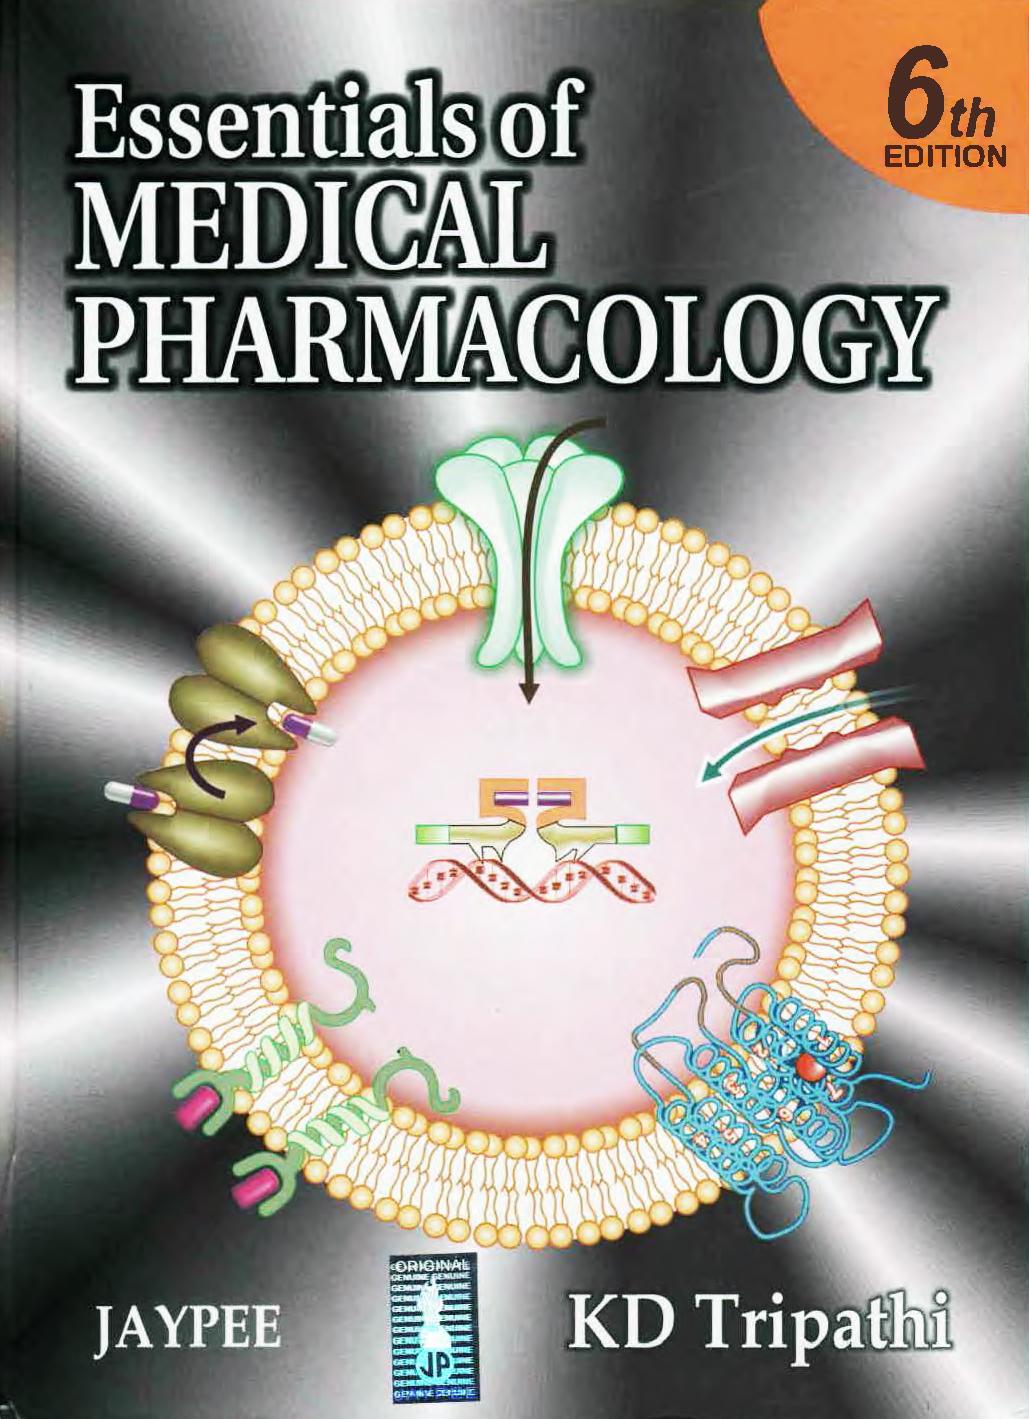 pharmacology satoskar book free